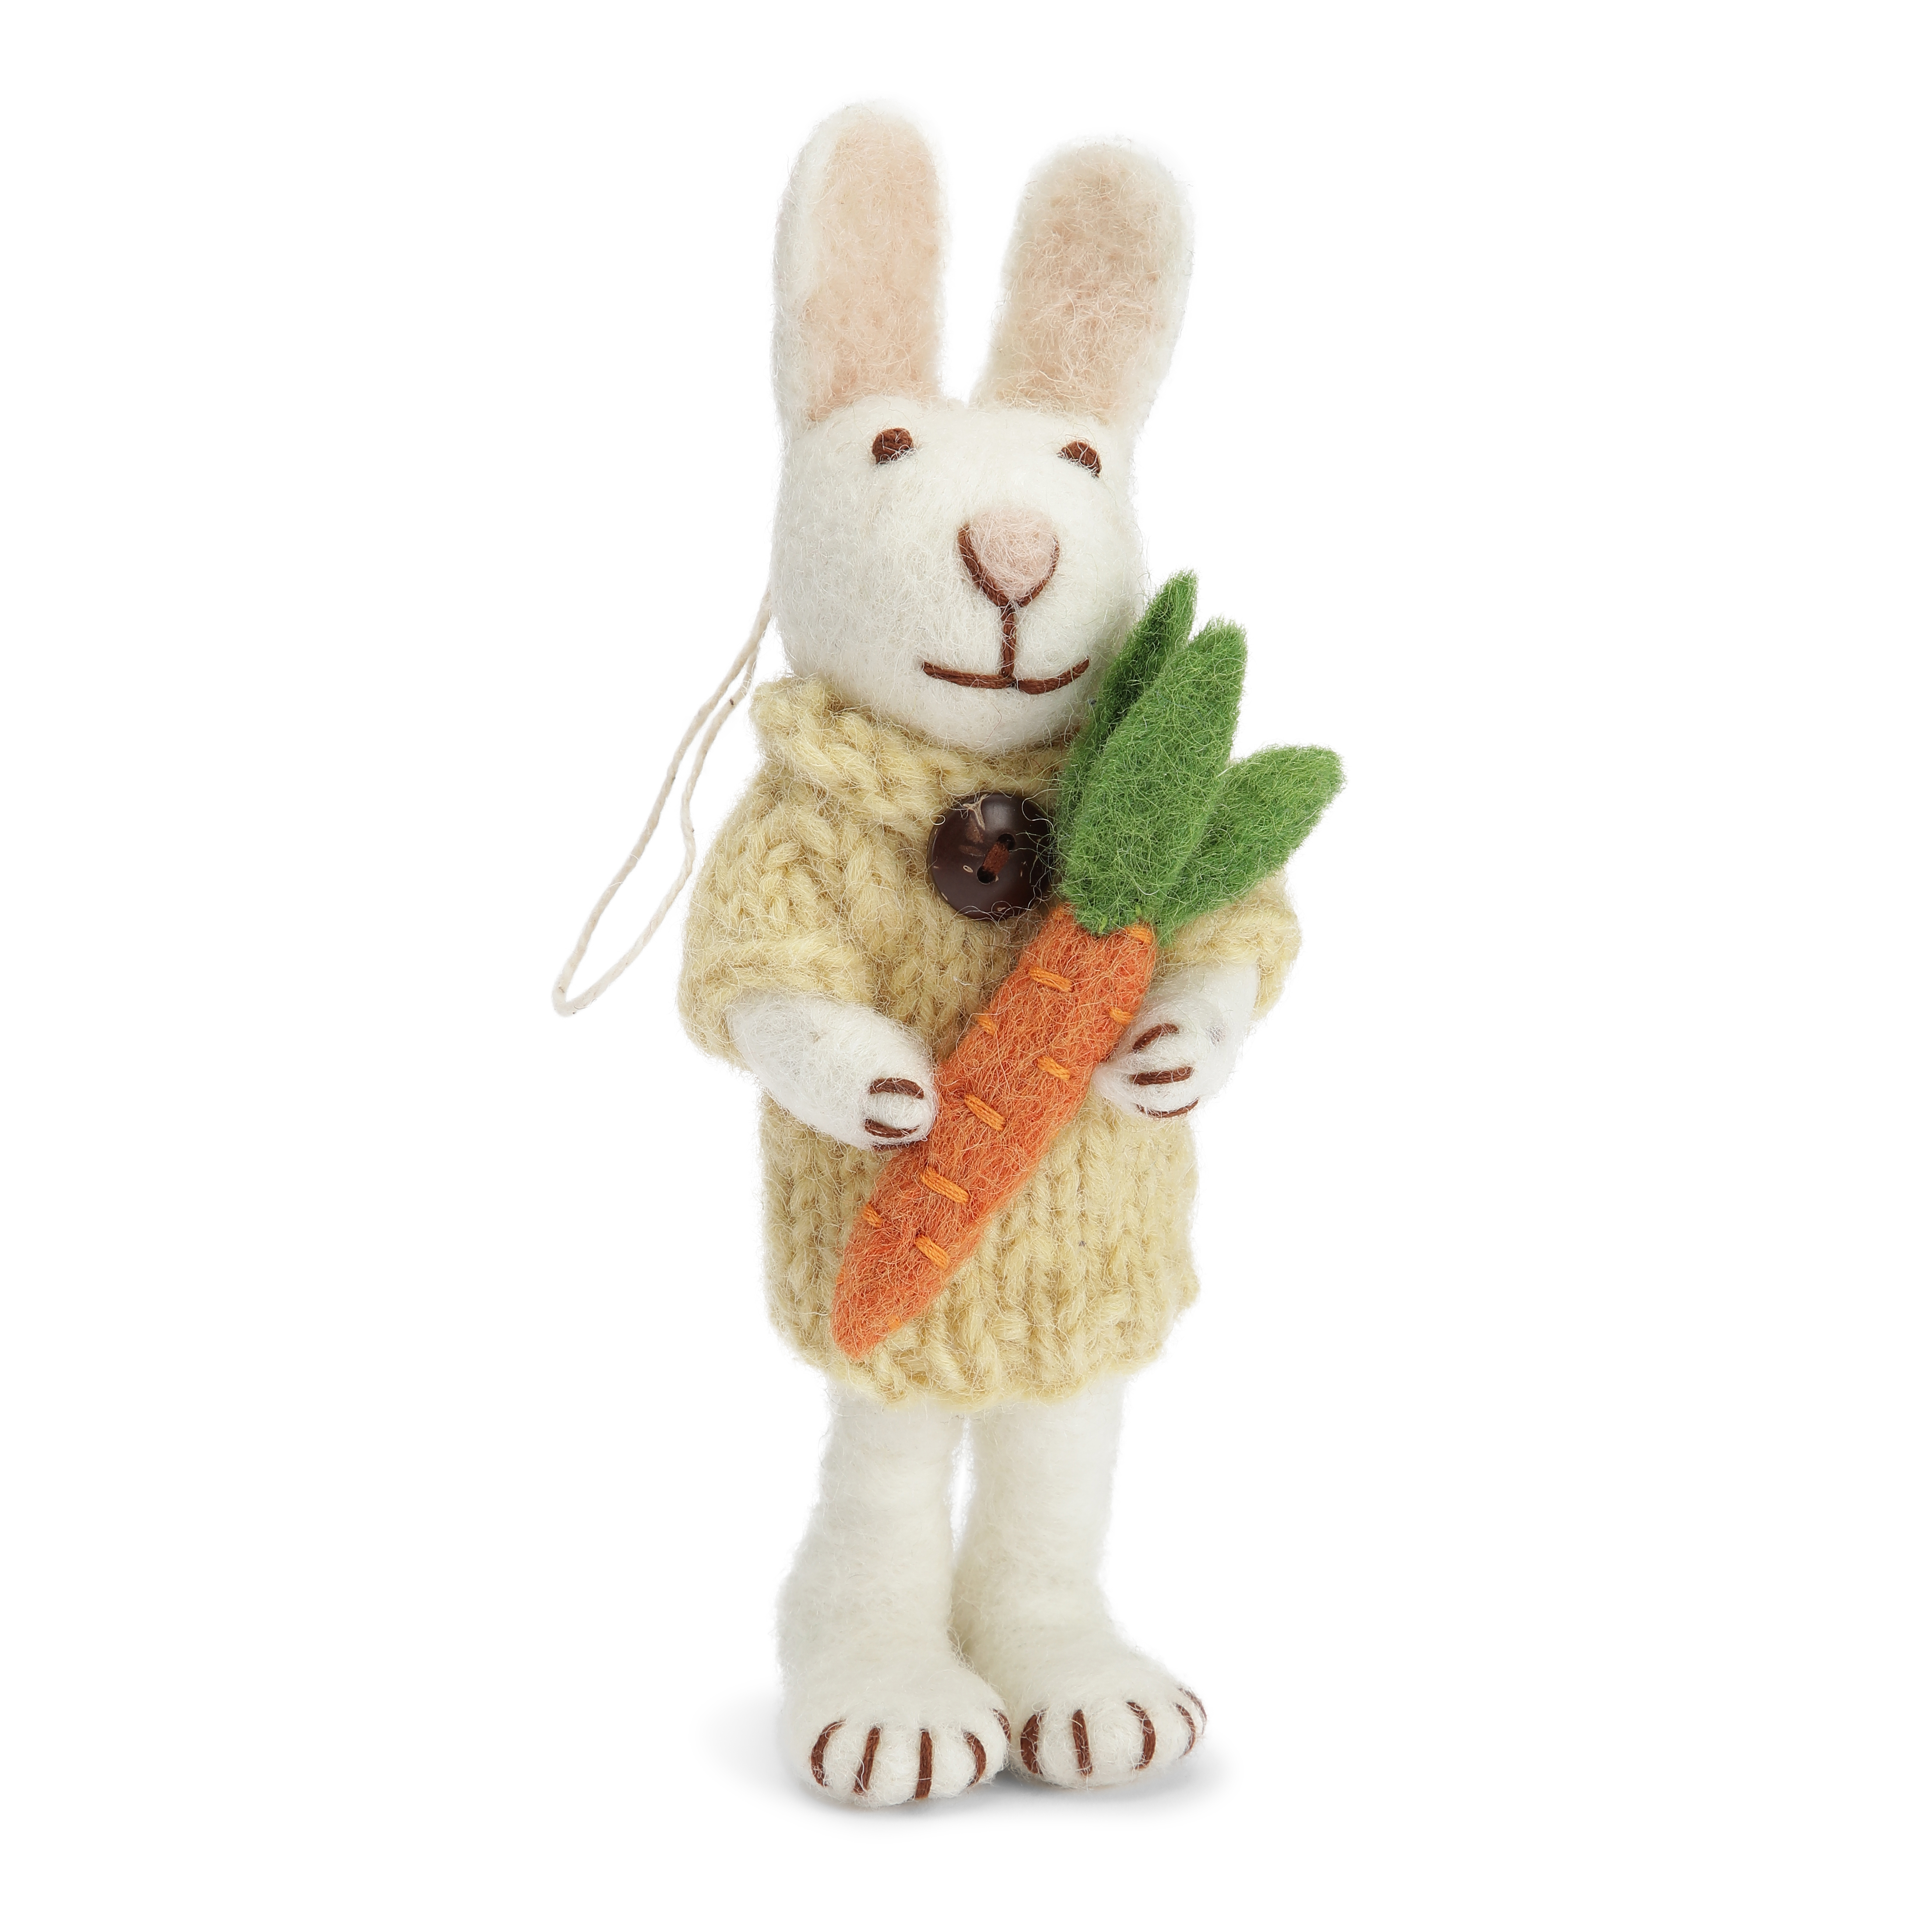 Gry & Sif handgefilztes weißes Hasenmädchen mit gelbem Kleidchen und Karotte 14 cm